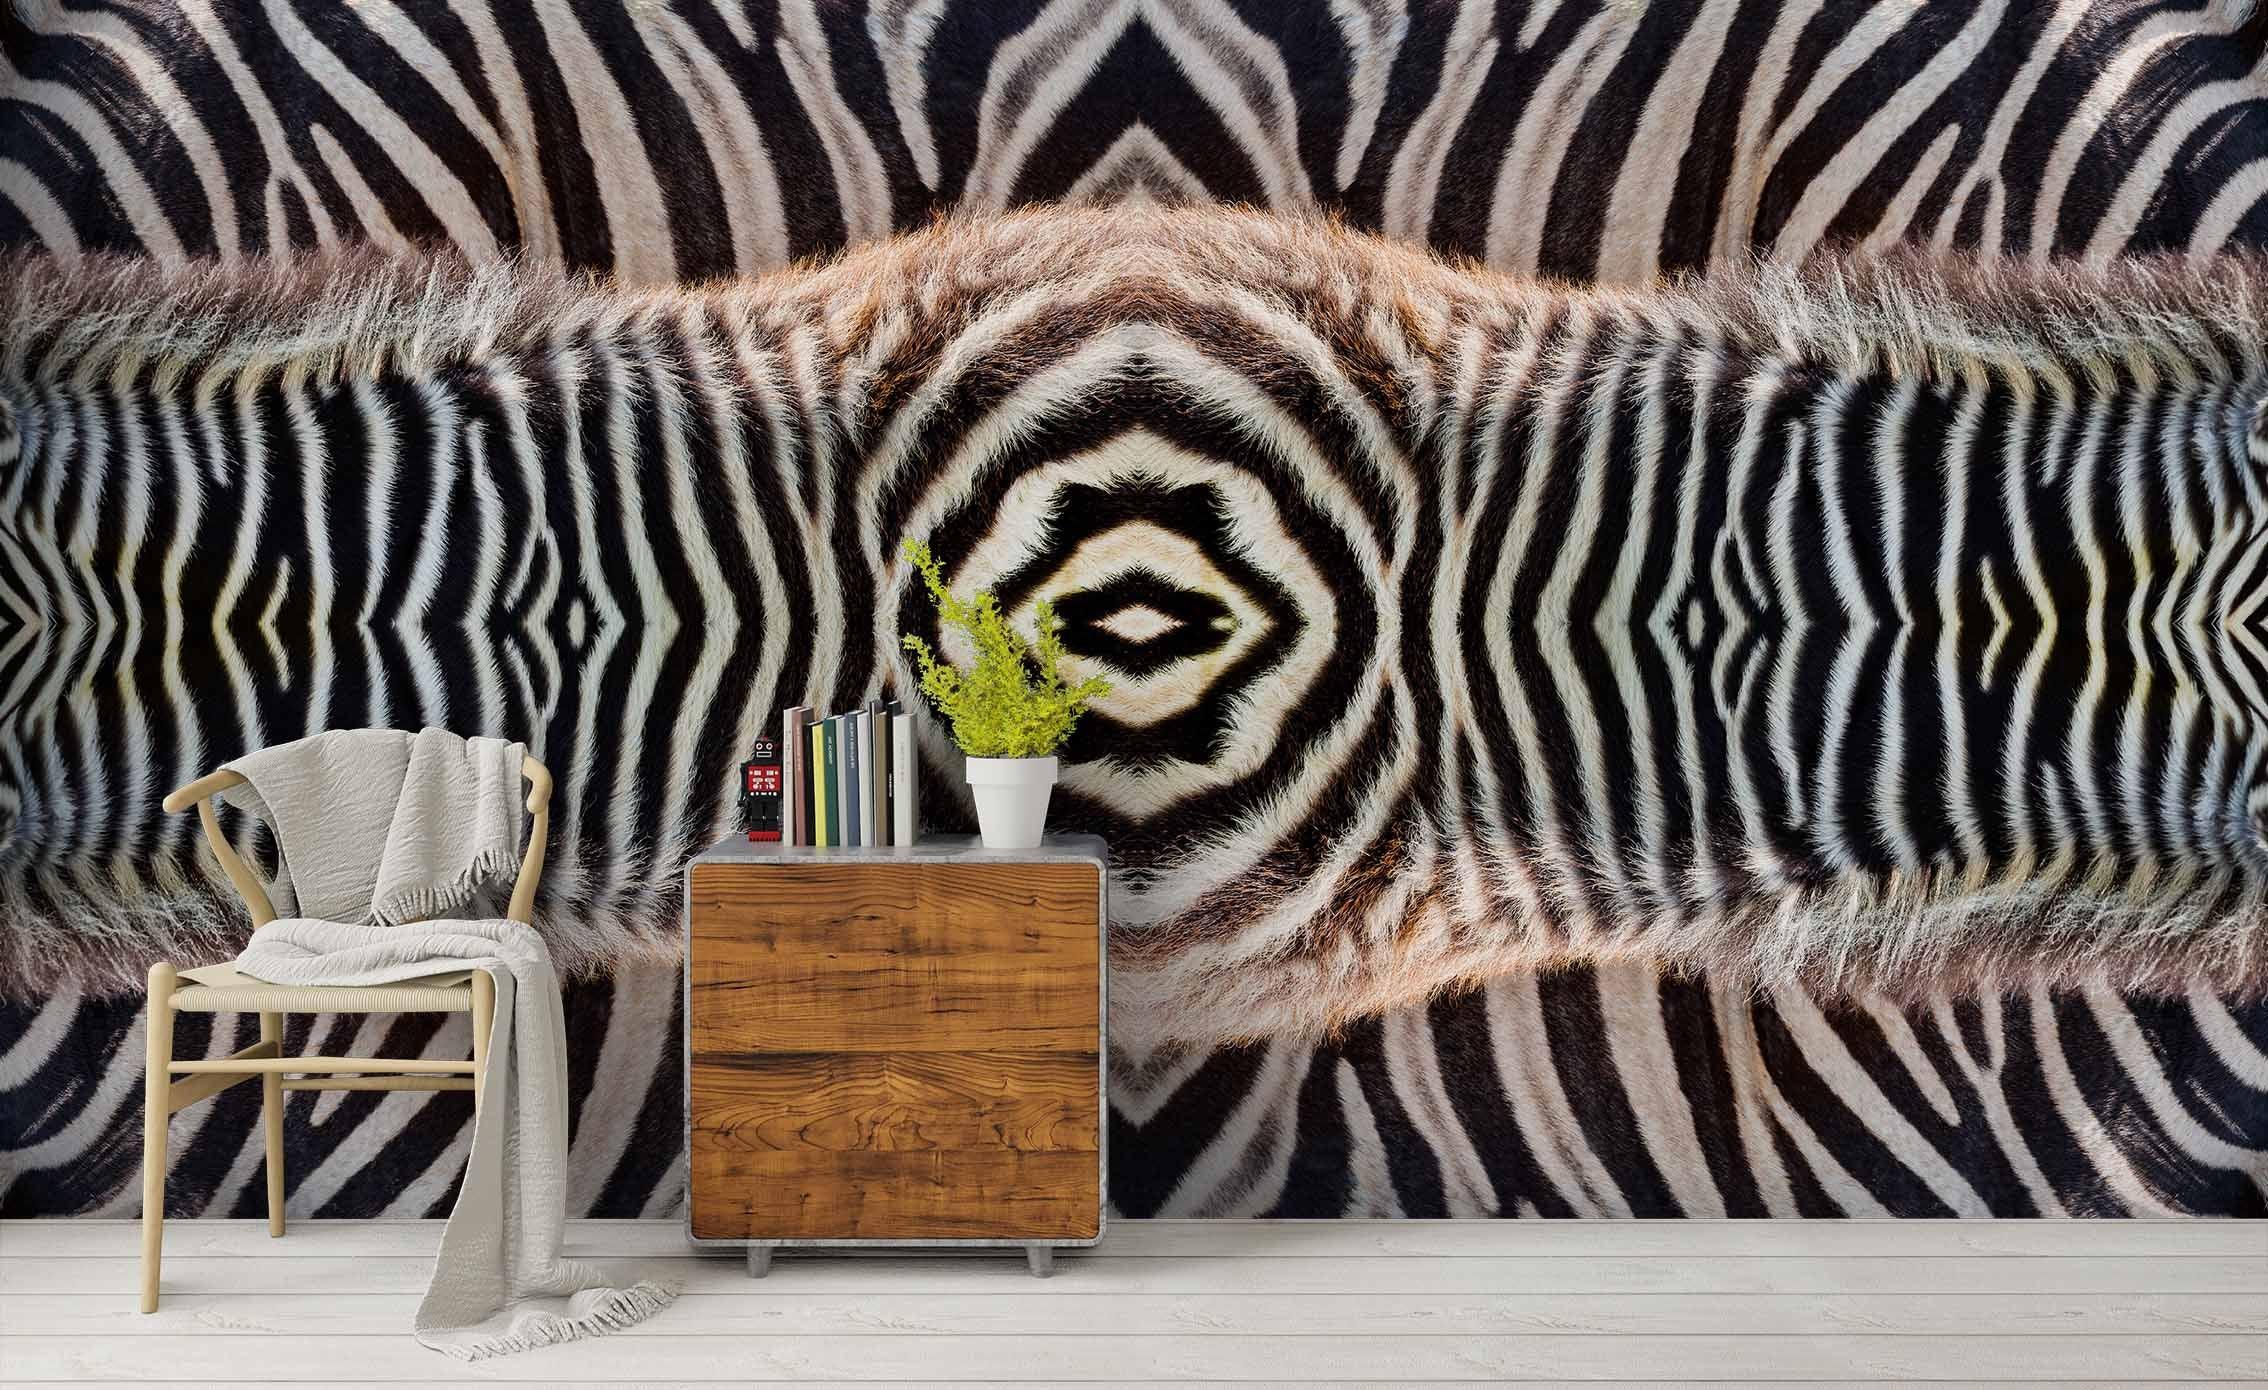 3D Abstract Zebra Texture Wall Mural Wallpaper 28 LQH- Jess Art Decoration